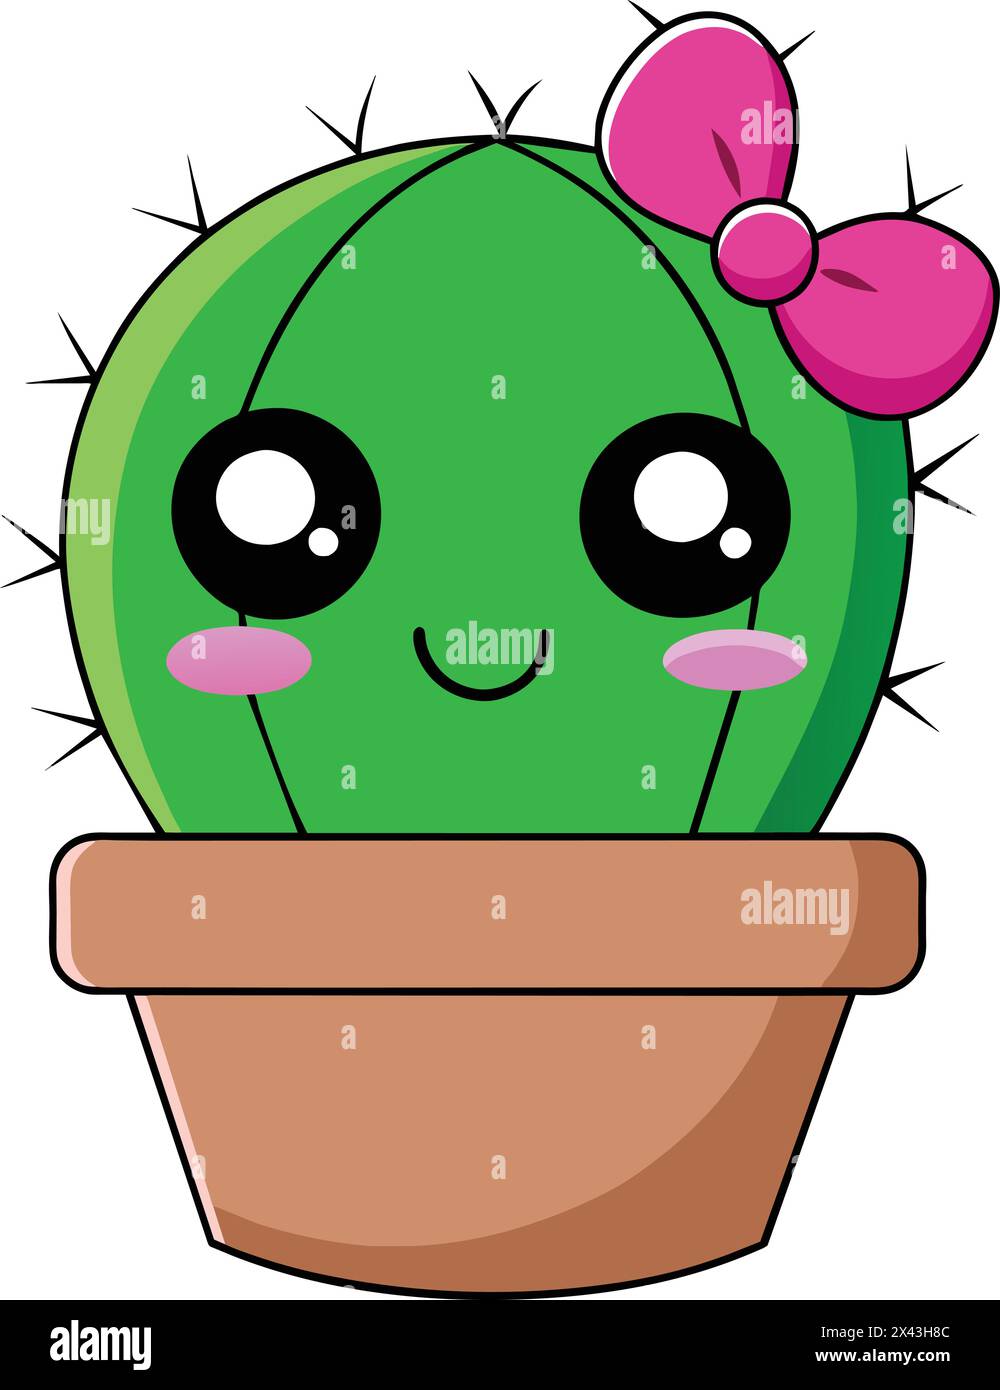 Cute Cactus Vector: Vibrante illustrazione per progetti creativi Illustrazione Vettoriale